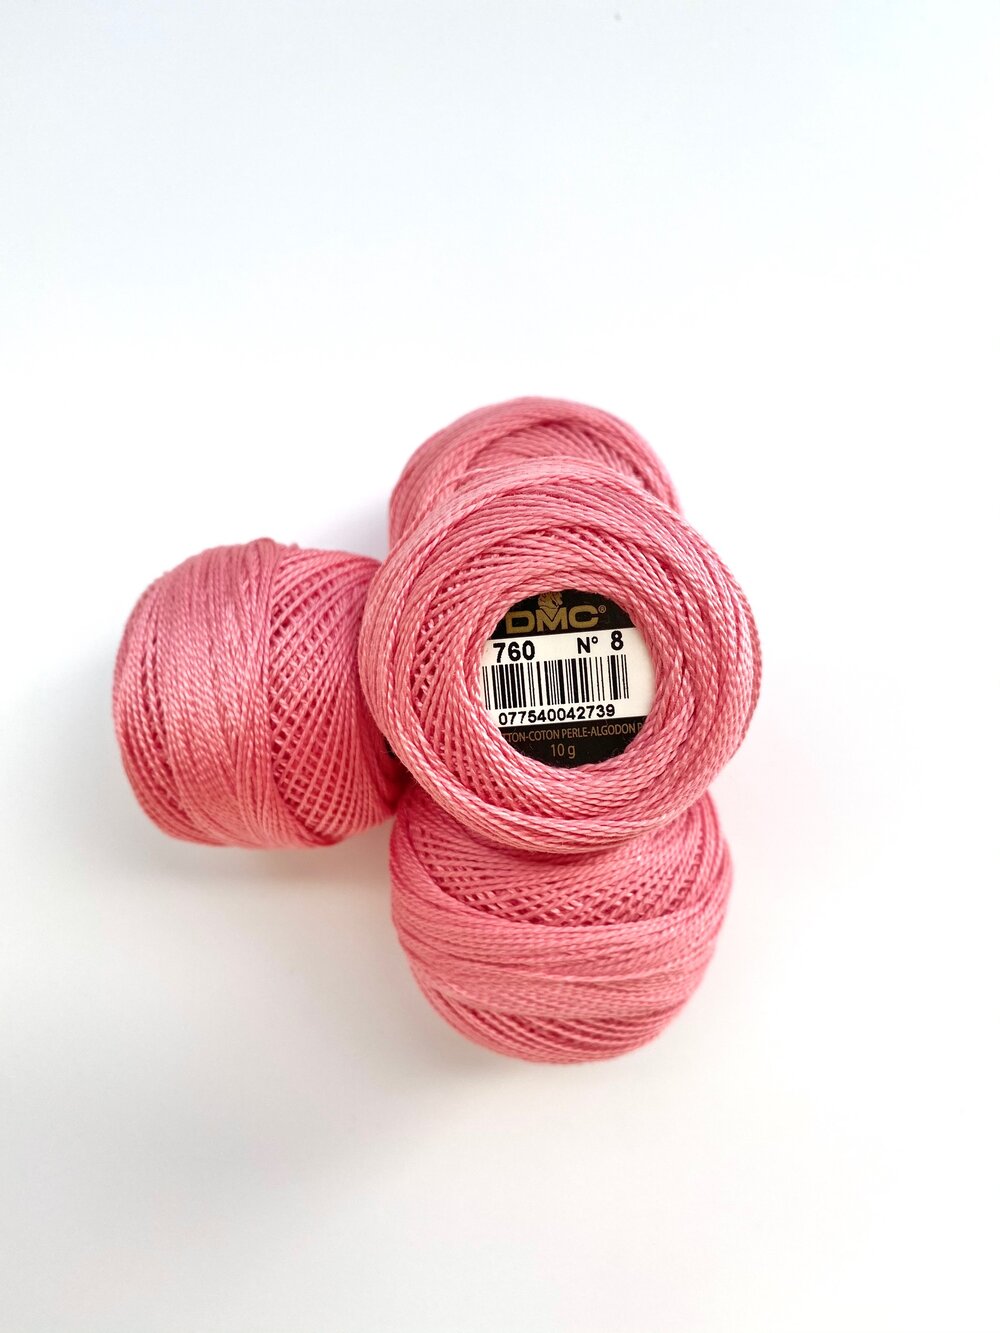 Pearl Gray - DMC Pearl Cotton Size 8 — Rose Petal Quilt Shop